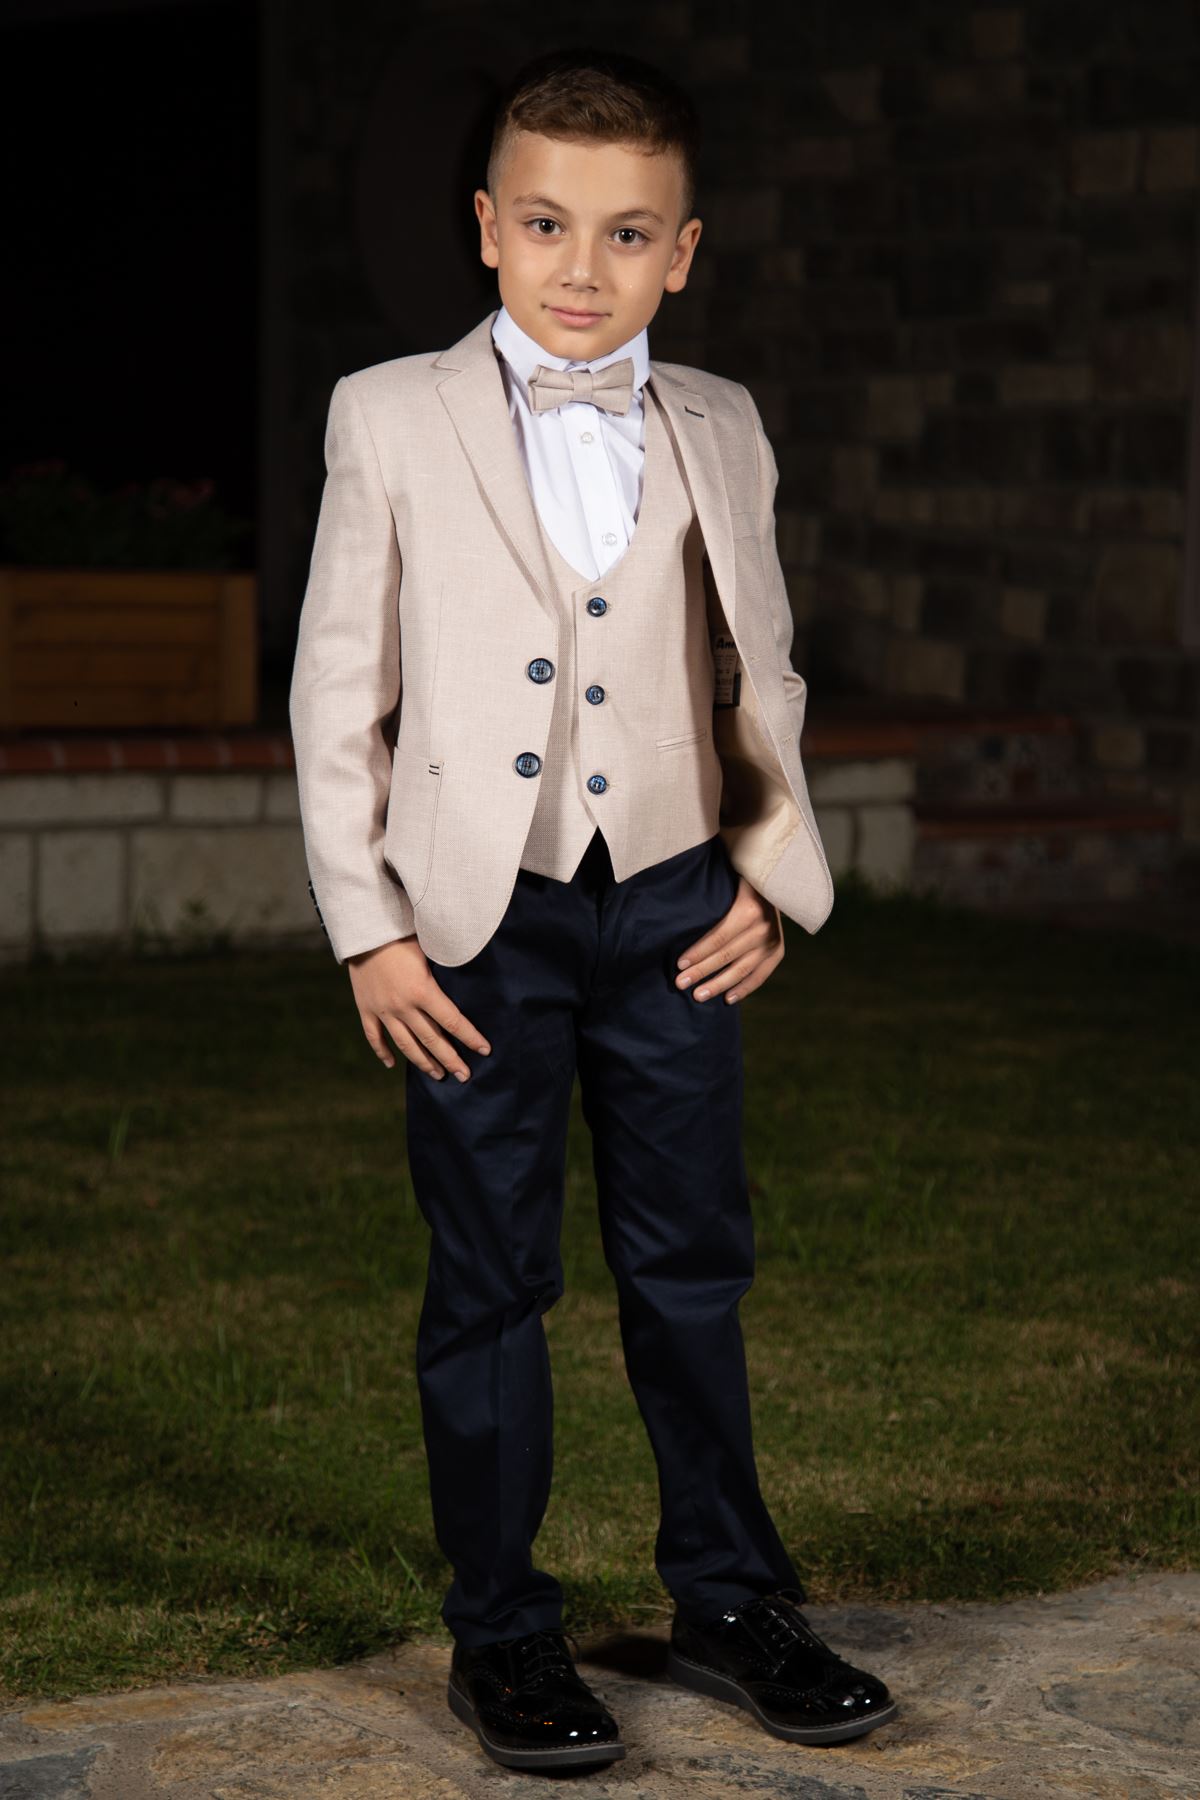 Borsa tascabile, modello flecked, Mono collare, set completo Boy Suit 153 Beige